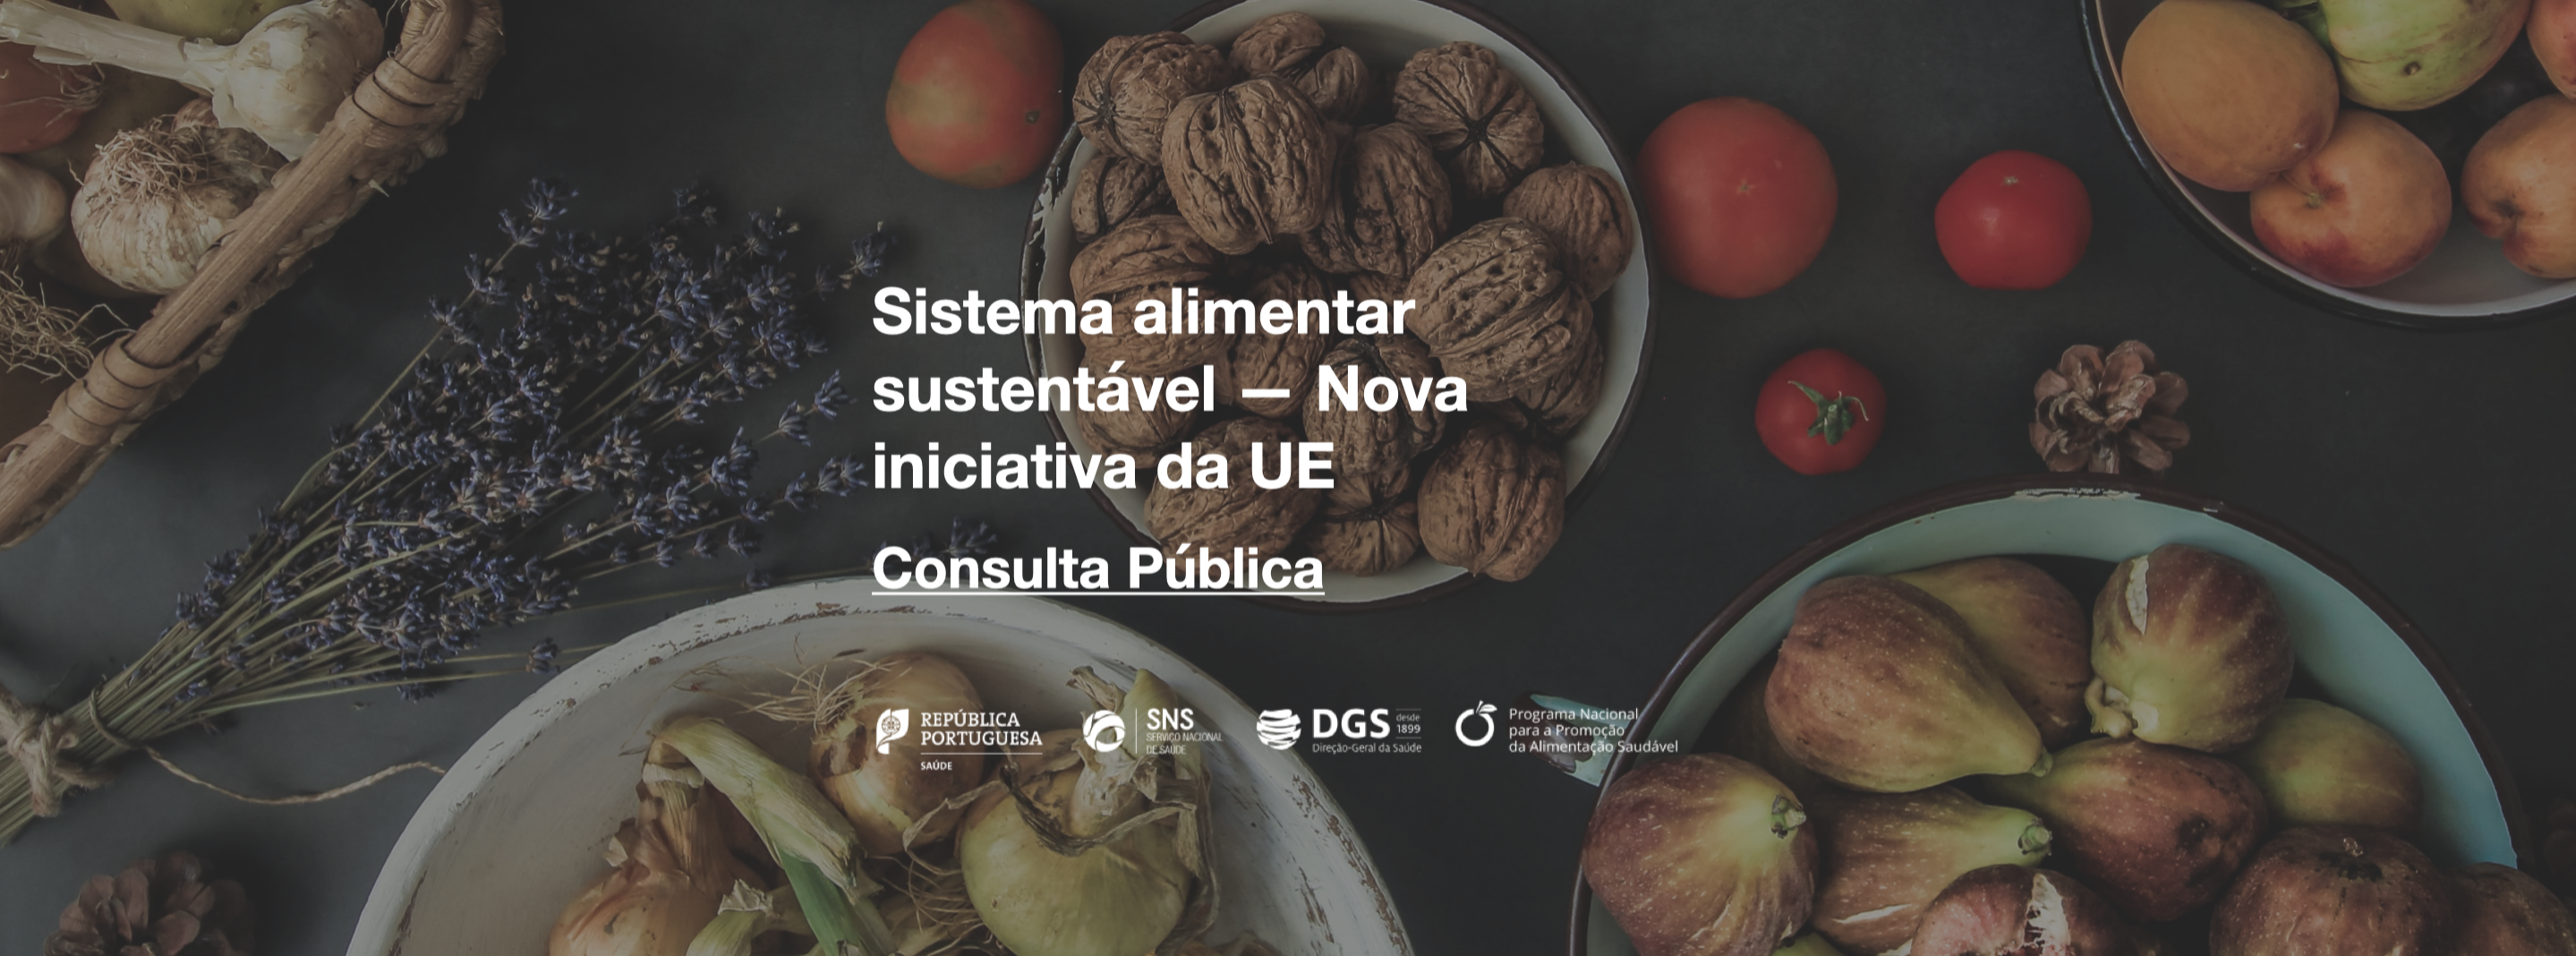 Nova iniciativa da UE | Sistema alimentar sustentável